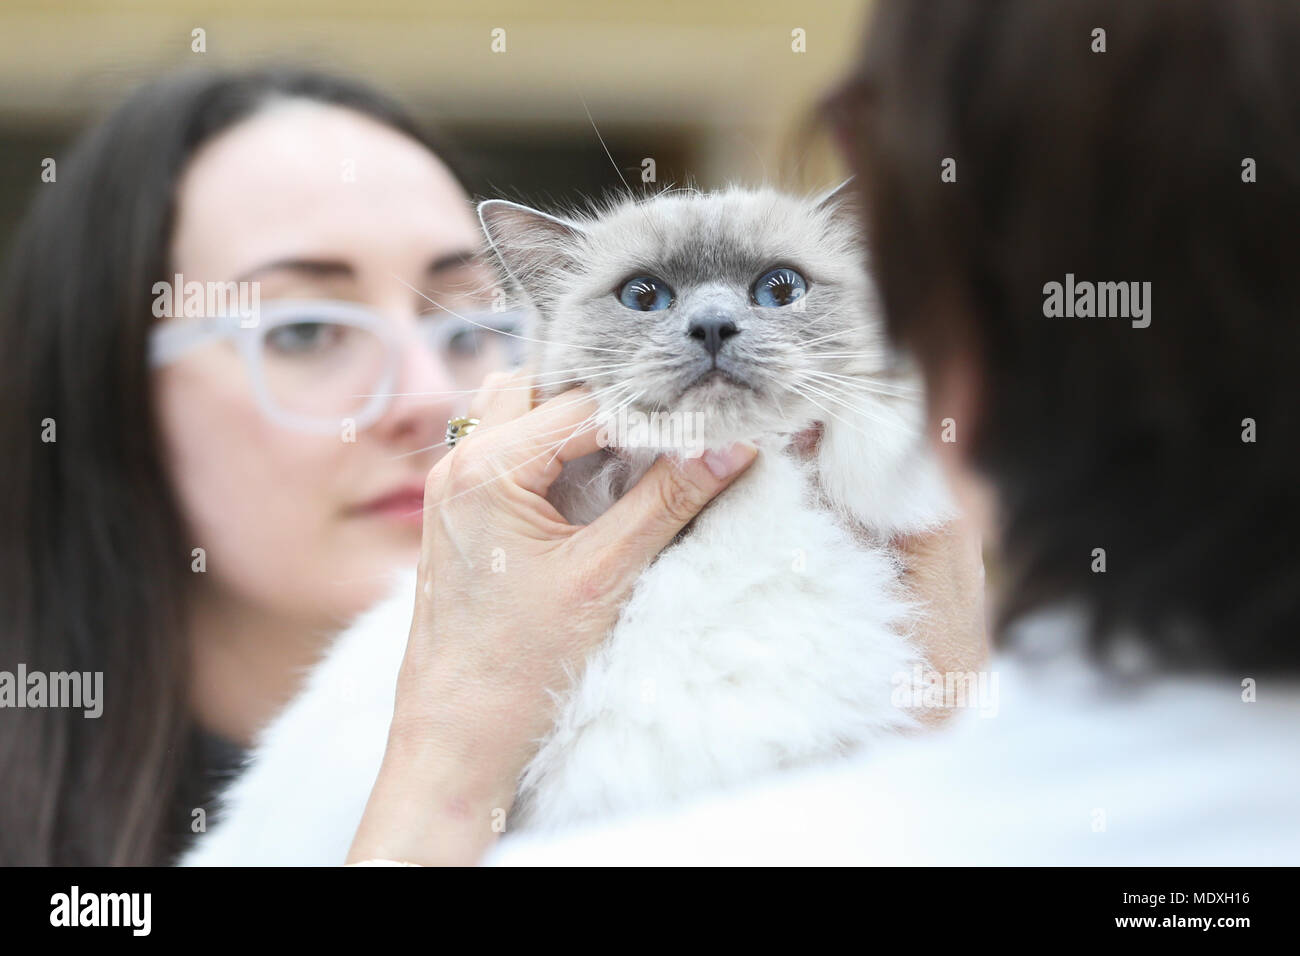 Eine Katze reagiert ruhig, während an der britischen Ragdoll Cat Club Show beurteilt werden. Ragdoll Katzen sind für Ihren entspannten Charakter und Welpen - wie die Natur bekannt. Stockfoto